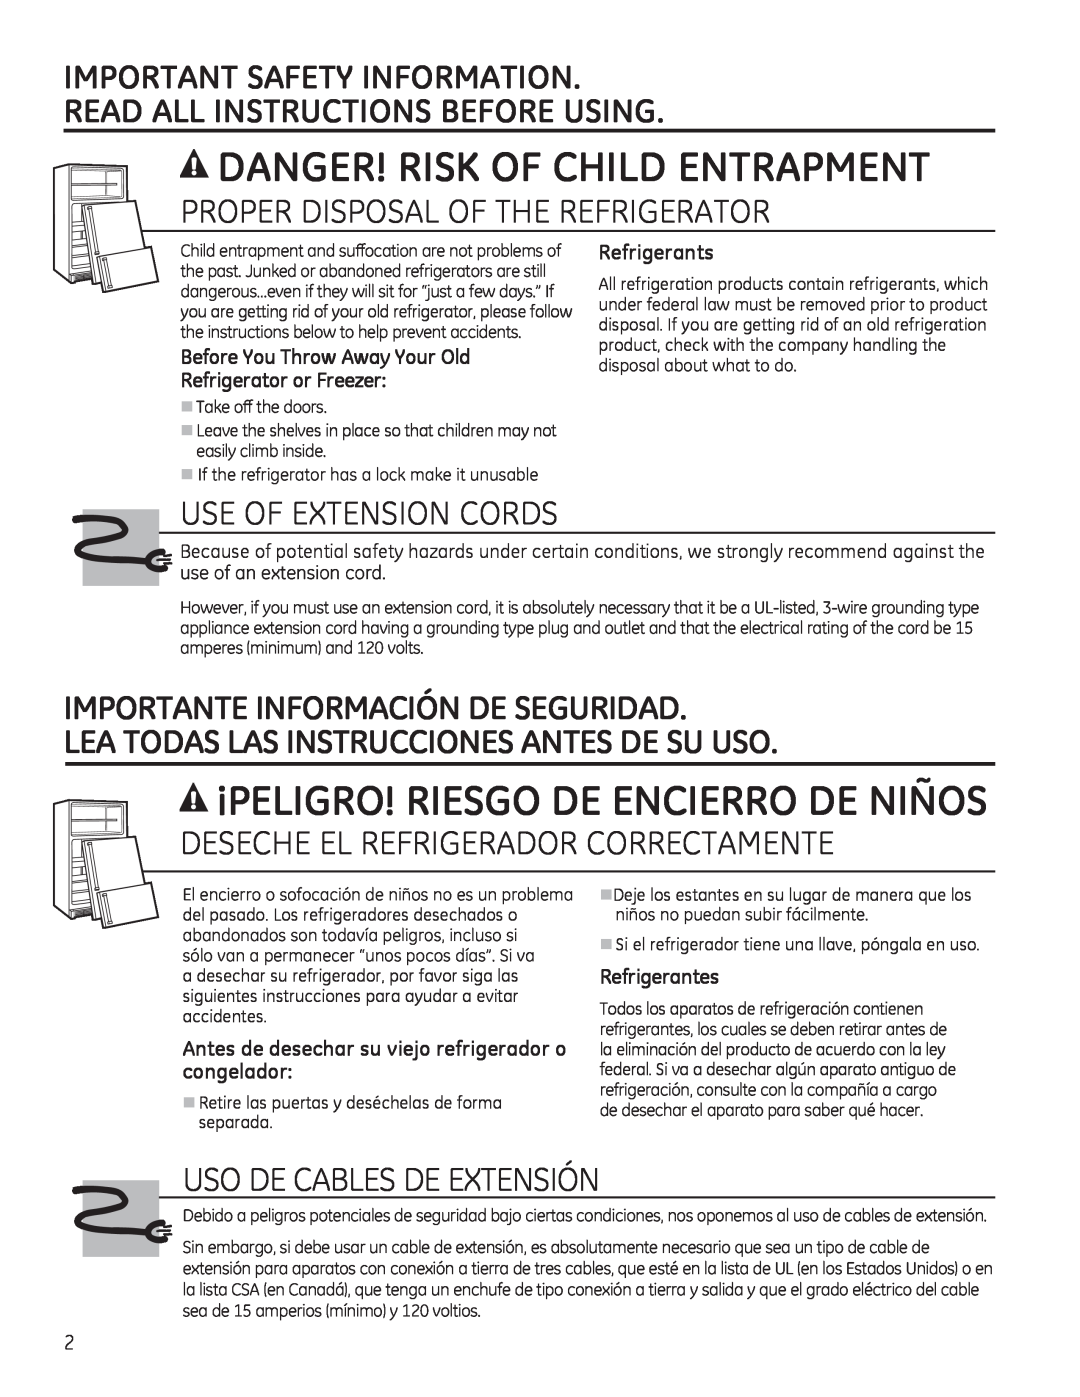 GE 17 Danger! Risk Of Child Entrapment, ¡Peligro! Riesgo De Encierro De Niños, Important Safety Information, Refrigerants 